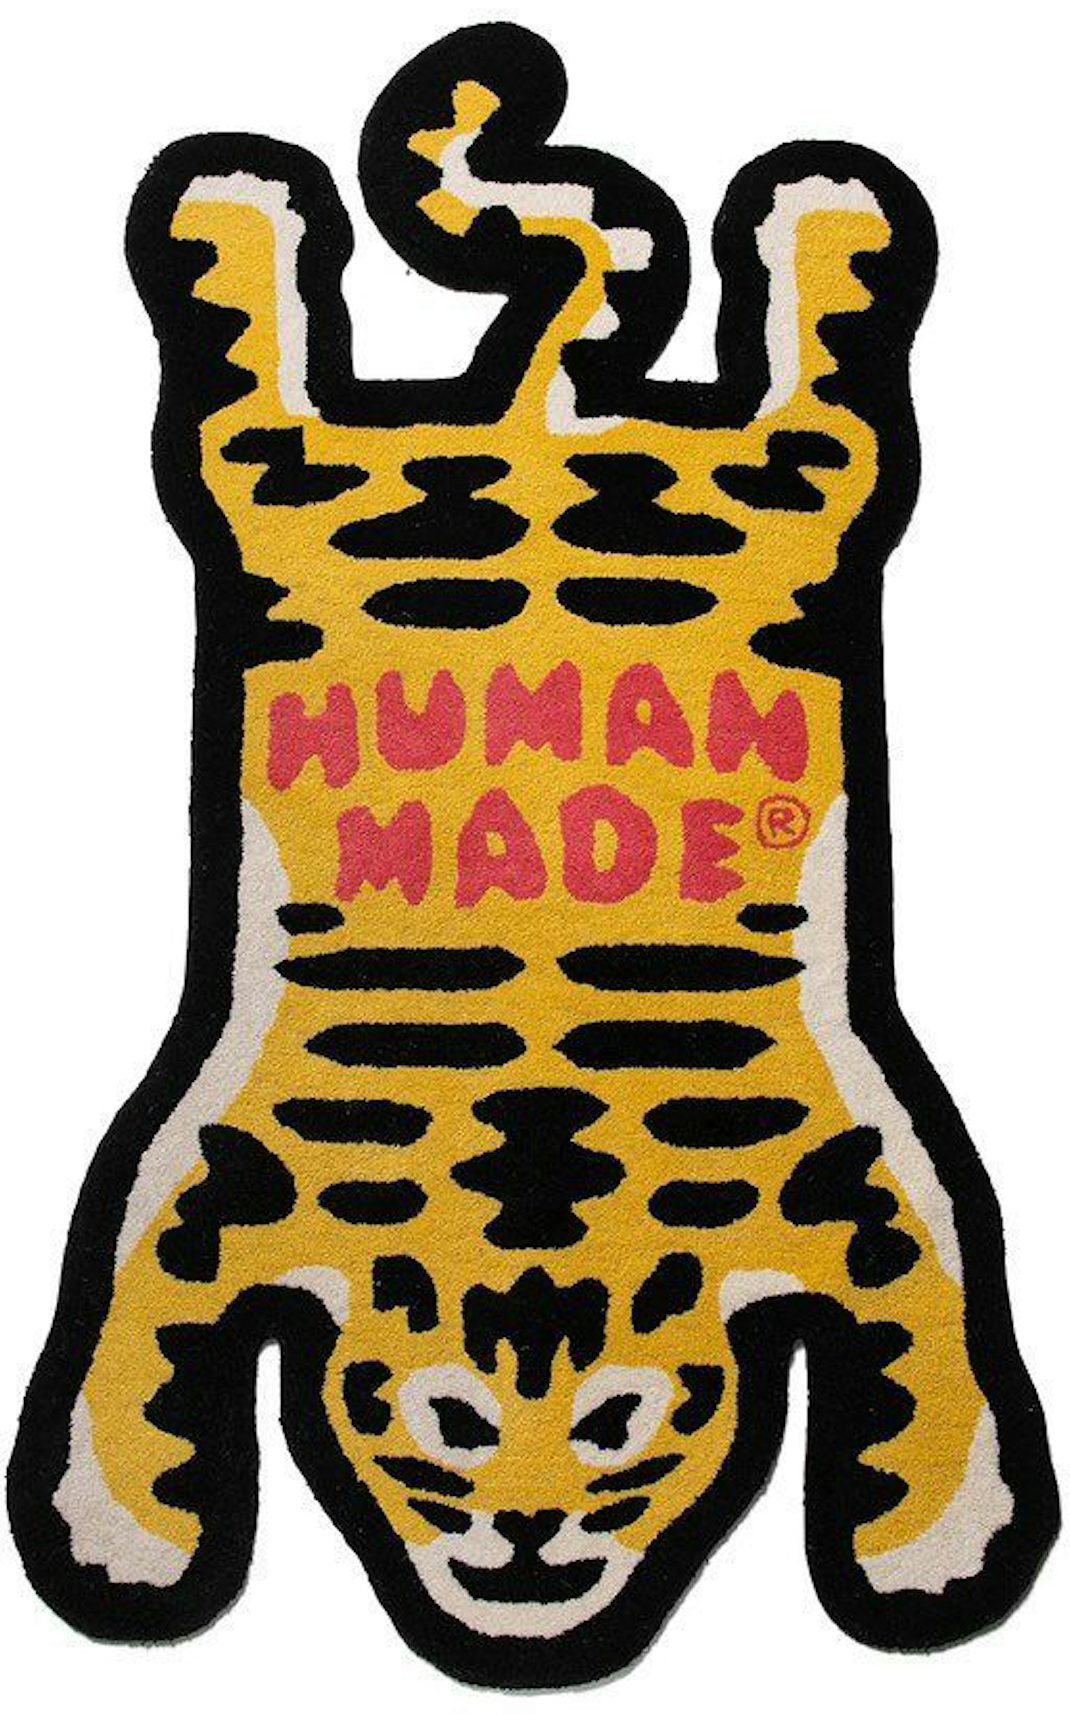 human made rug